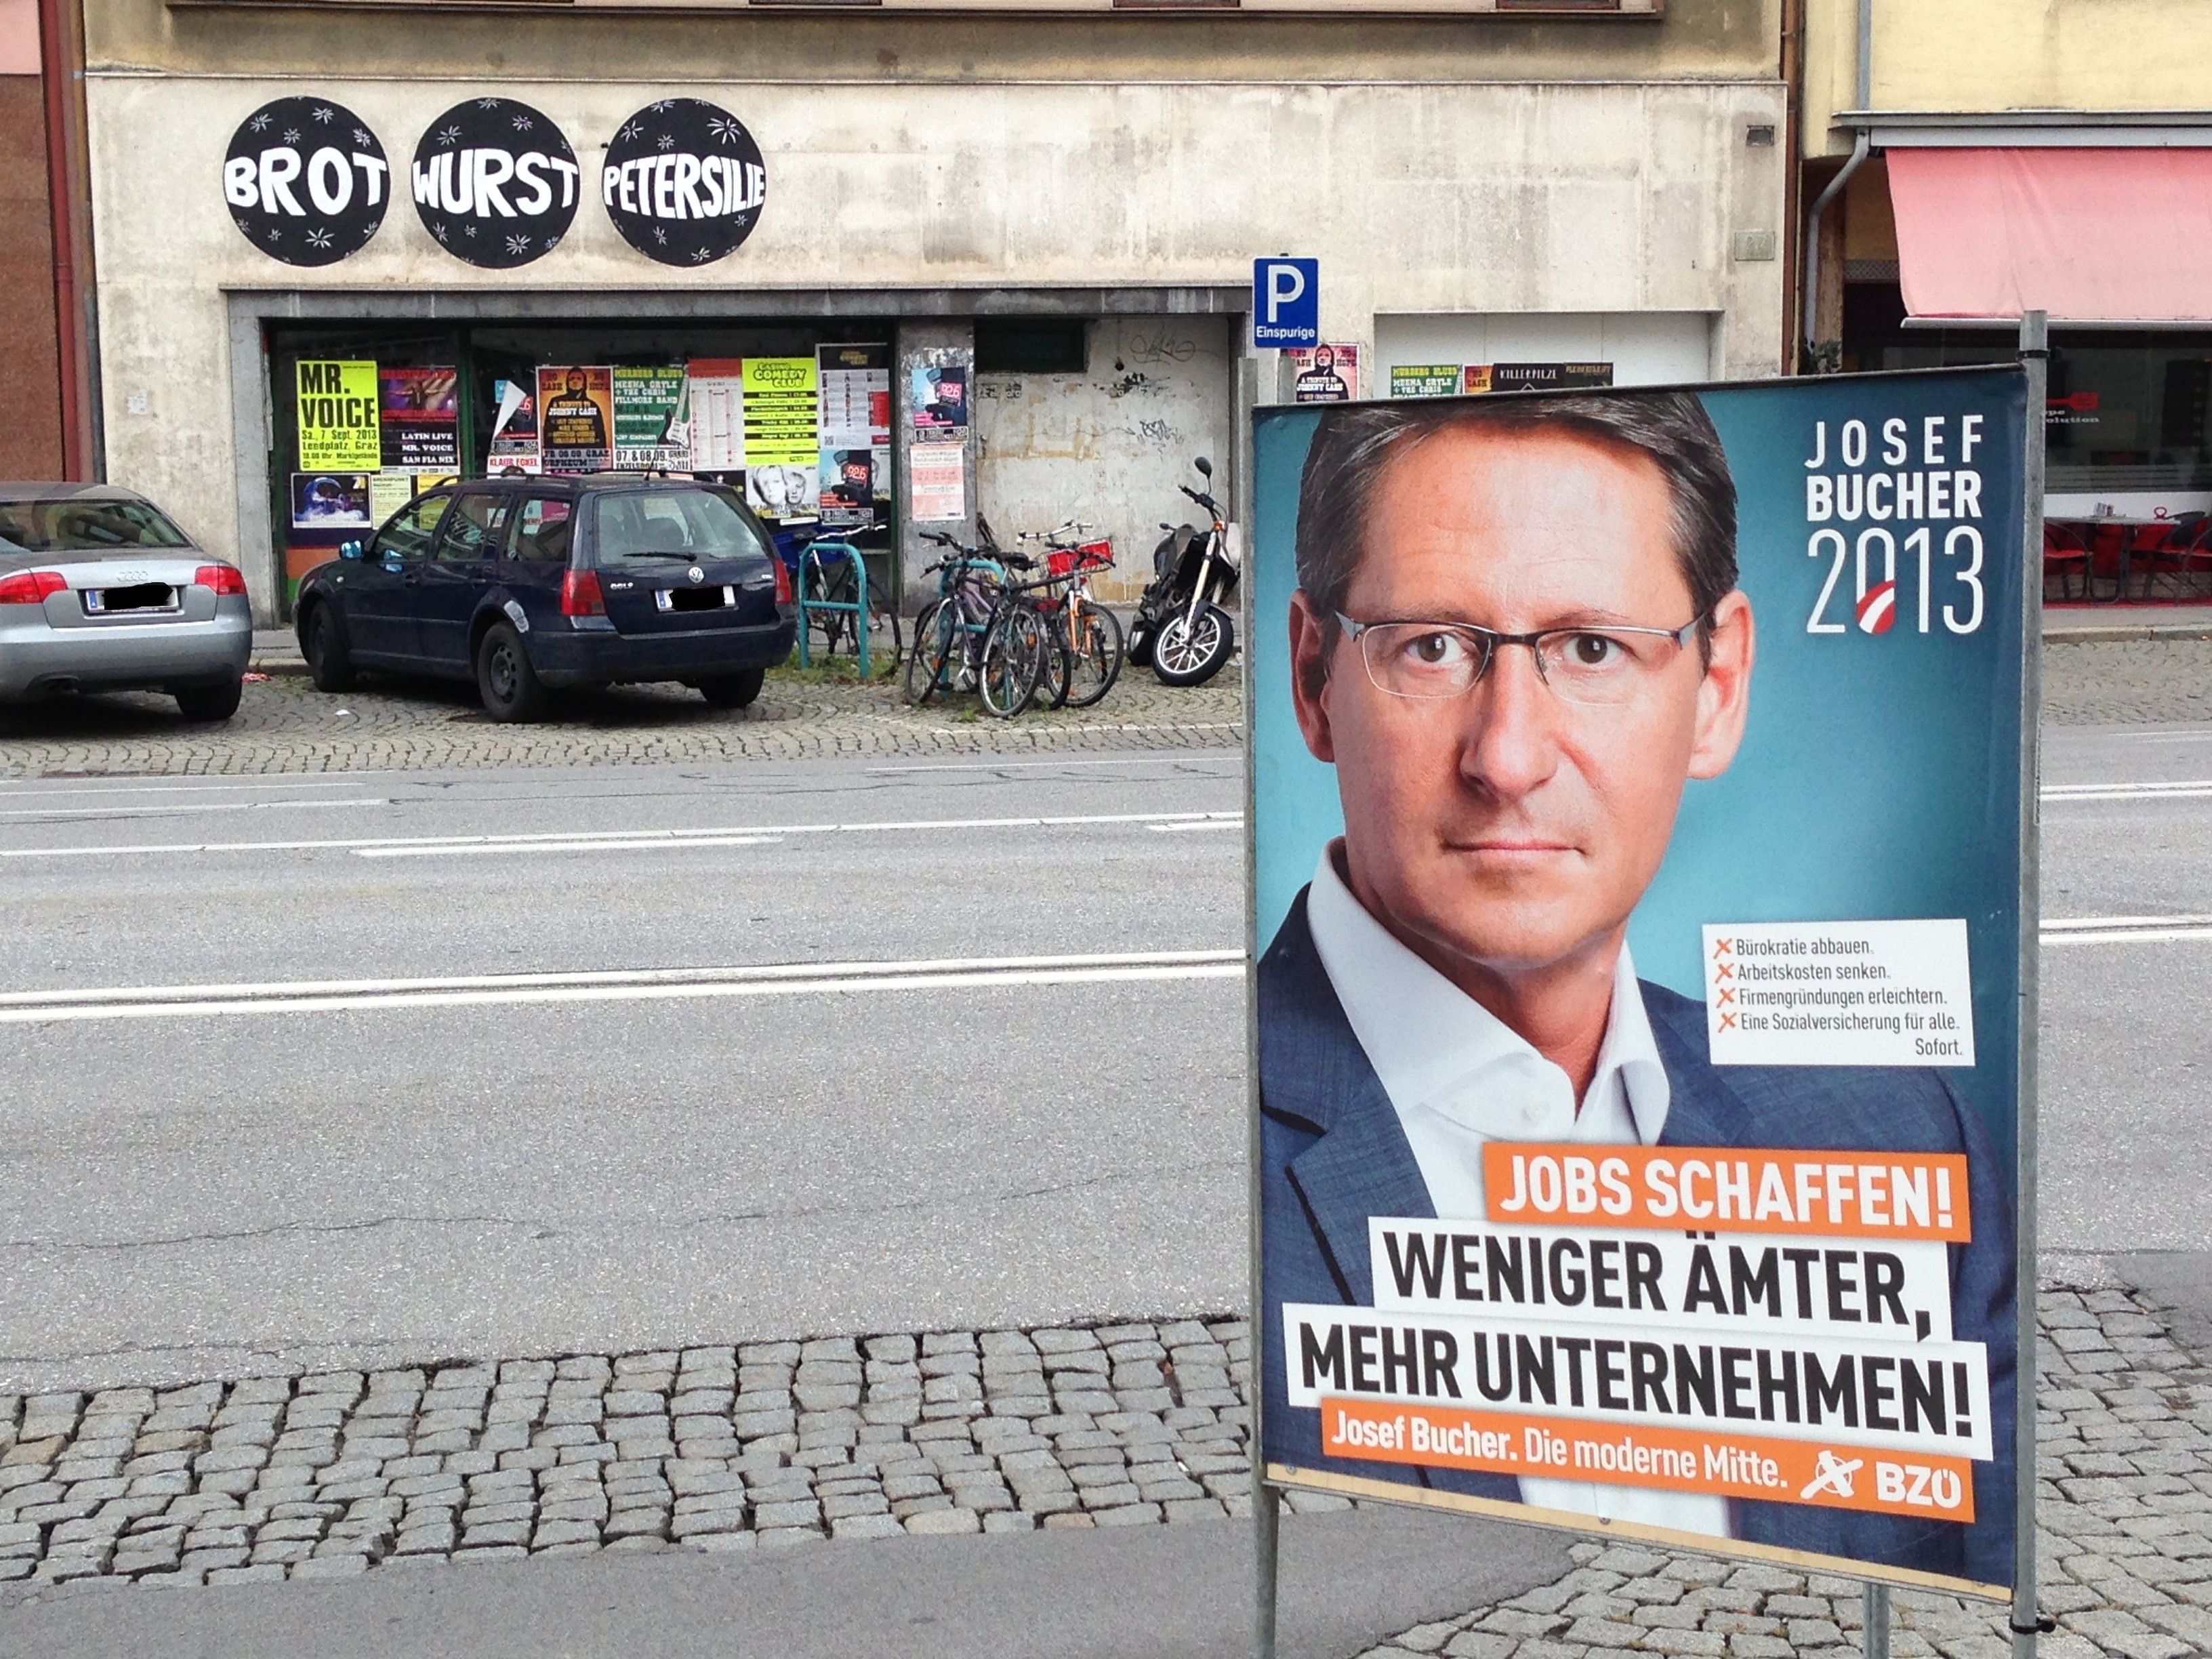 Die Wahlplakate nutzen die letzten freien Flächen im öffentlichen Raum. Im Hintergrund sieht man ein Kunstwerk von Bernhard Wolf, das einen Moment die Aufmerksamkeit von der Werbung wegziehen soll.